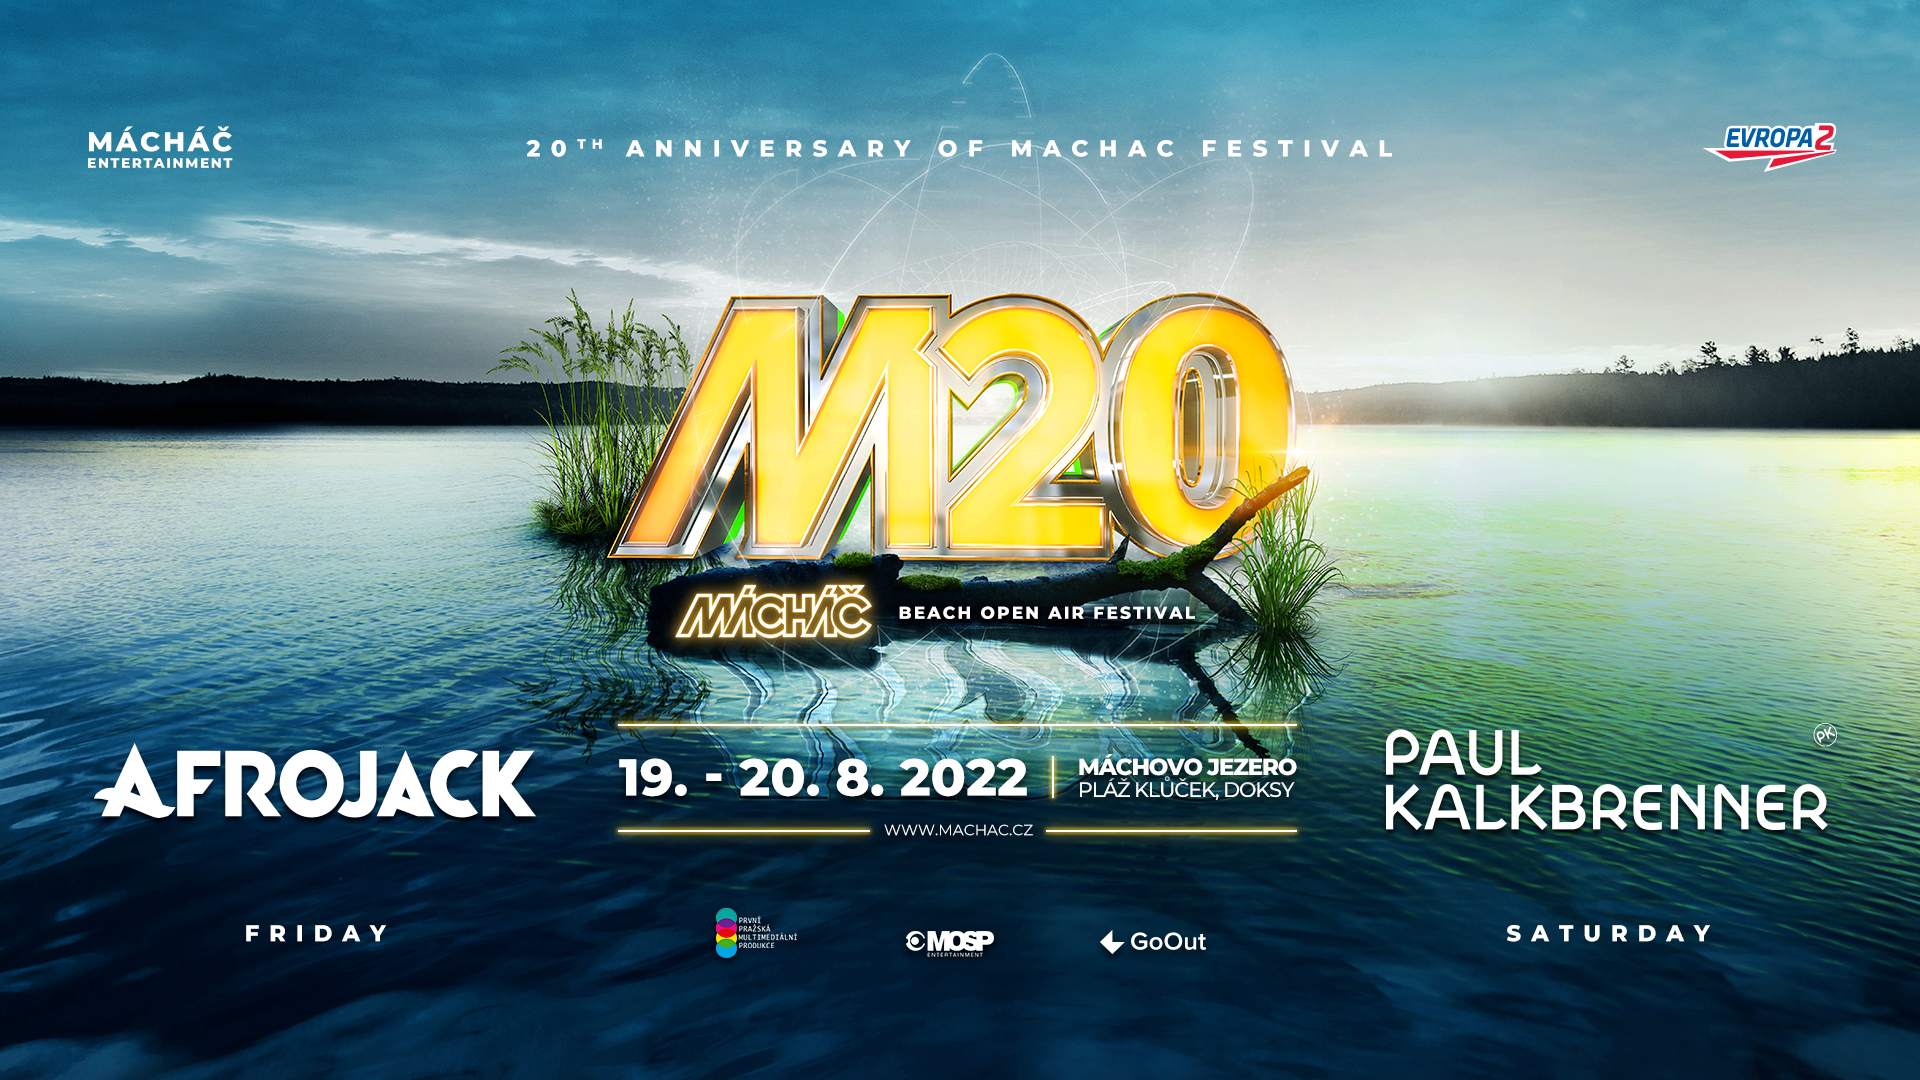 Mácháč Festival 2022 - フライヤー表